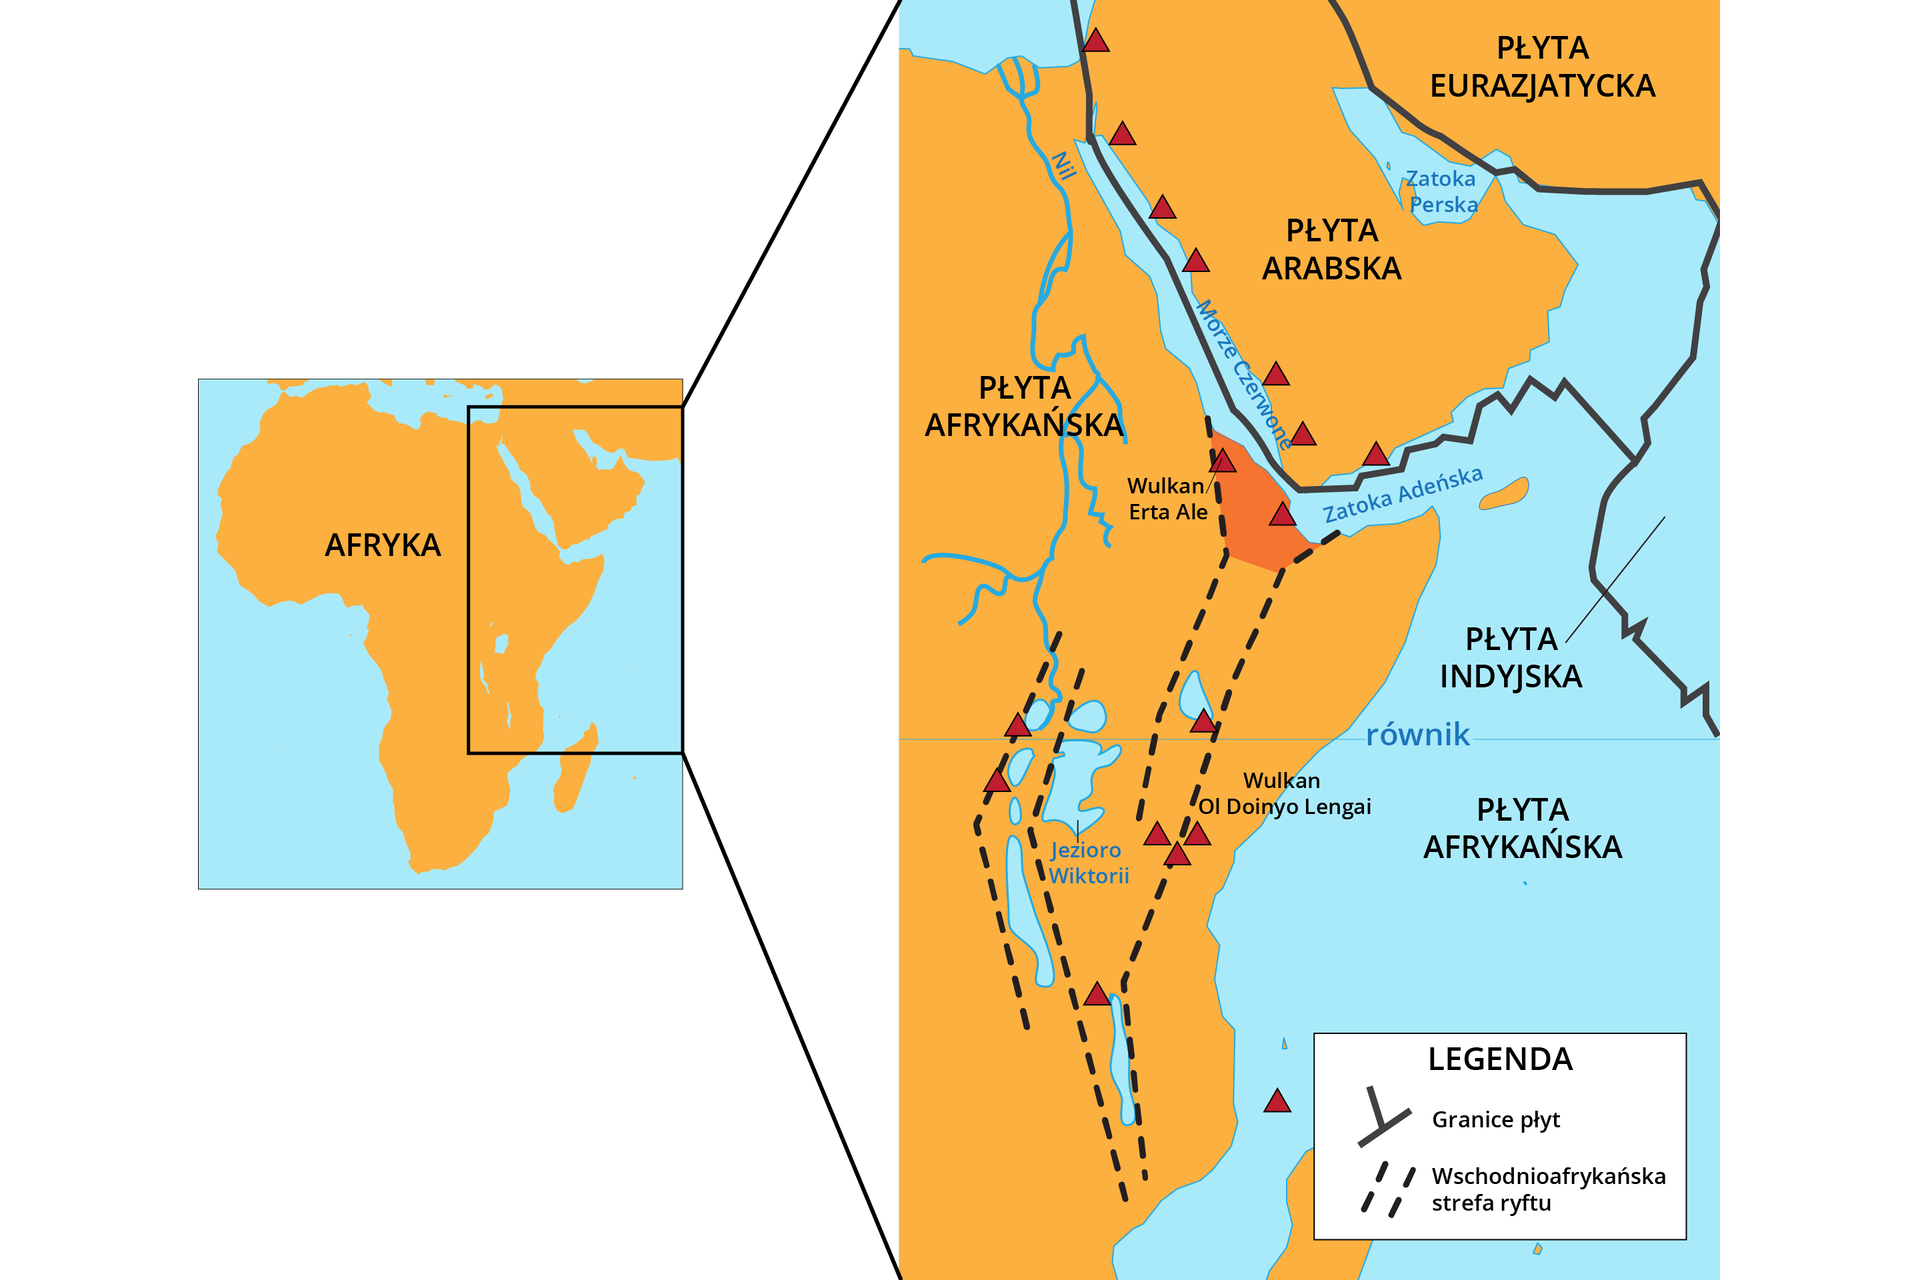 Na ilustracji jest mapa – wycinek wschodniego wybrzeża Afryki, Półwyspu Arabskiego oraz południowa część płyty eurazjatyckiej. Mapa przedstawia występowanie ryftu wschodnioafrykańskiego. Czarną, ciągłą linią są zaznaczono granice płyt tektonicznych. Na Morzu Czerwonym i Zatoce Adeńskiej jest granica płyty afrykańskiej i płyty arabskiej, z kolei na Oceanie Indyjskim płyty indyjskiej i afrykańskiej. Na obszarze wschodniej Afryki przerywanymi liniami są zaznaczone obszary, gdzie występuje wschodnioafrykańska strefa ryftu. Dwie przerywane linie ciągną się, jedna od wschodniego wybrzeża Afryki do zatoki Adeńskiej, a druga od okolic wschodniego wybrzeża do okolic Jeziora Wiktorii. Każda z tych dwóch płyt ma swoją równoległą do siebie strefę. Od okolic Jeziora Wiktorii do Morza Czerwonego występuje kolejna strefa ryftu. Przy tych strefach występują wzniesienia górskie zaznaczone czerwonymi trójkątami. Wulkany są podpisane m. in. Wulkan Erta Ale znajdujący się w strefie ryftu w okolicach Morza Czerwonego i Wulkan Ol Doinyo Lengai znajdujący się przy wybrzeżu Oceanu Indyjskiego równolegle od Jeziora Wiktorii.